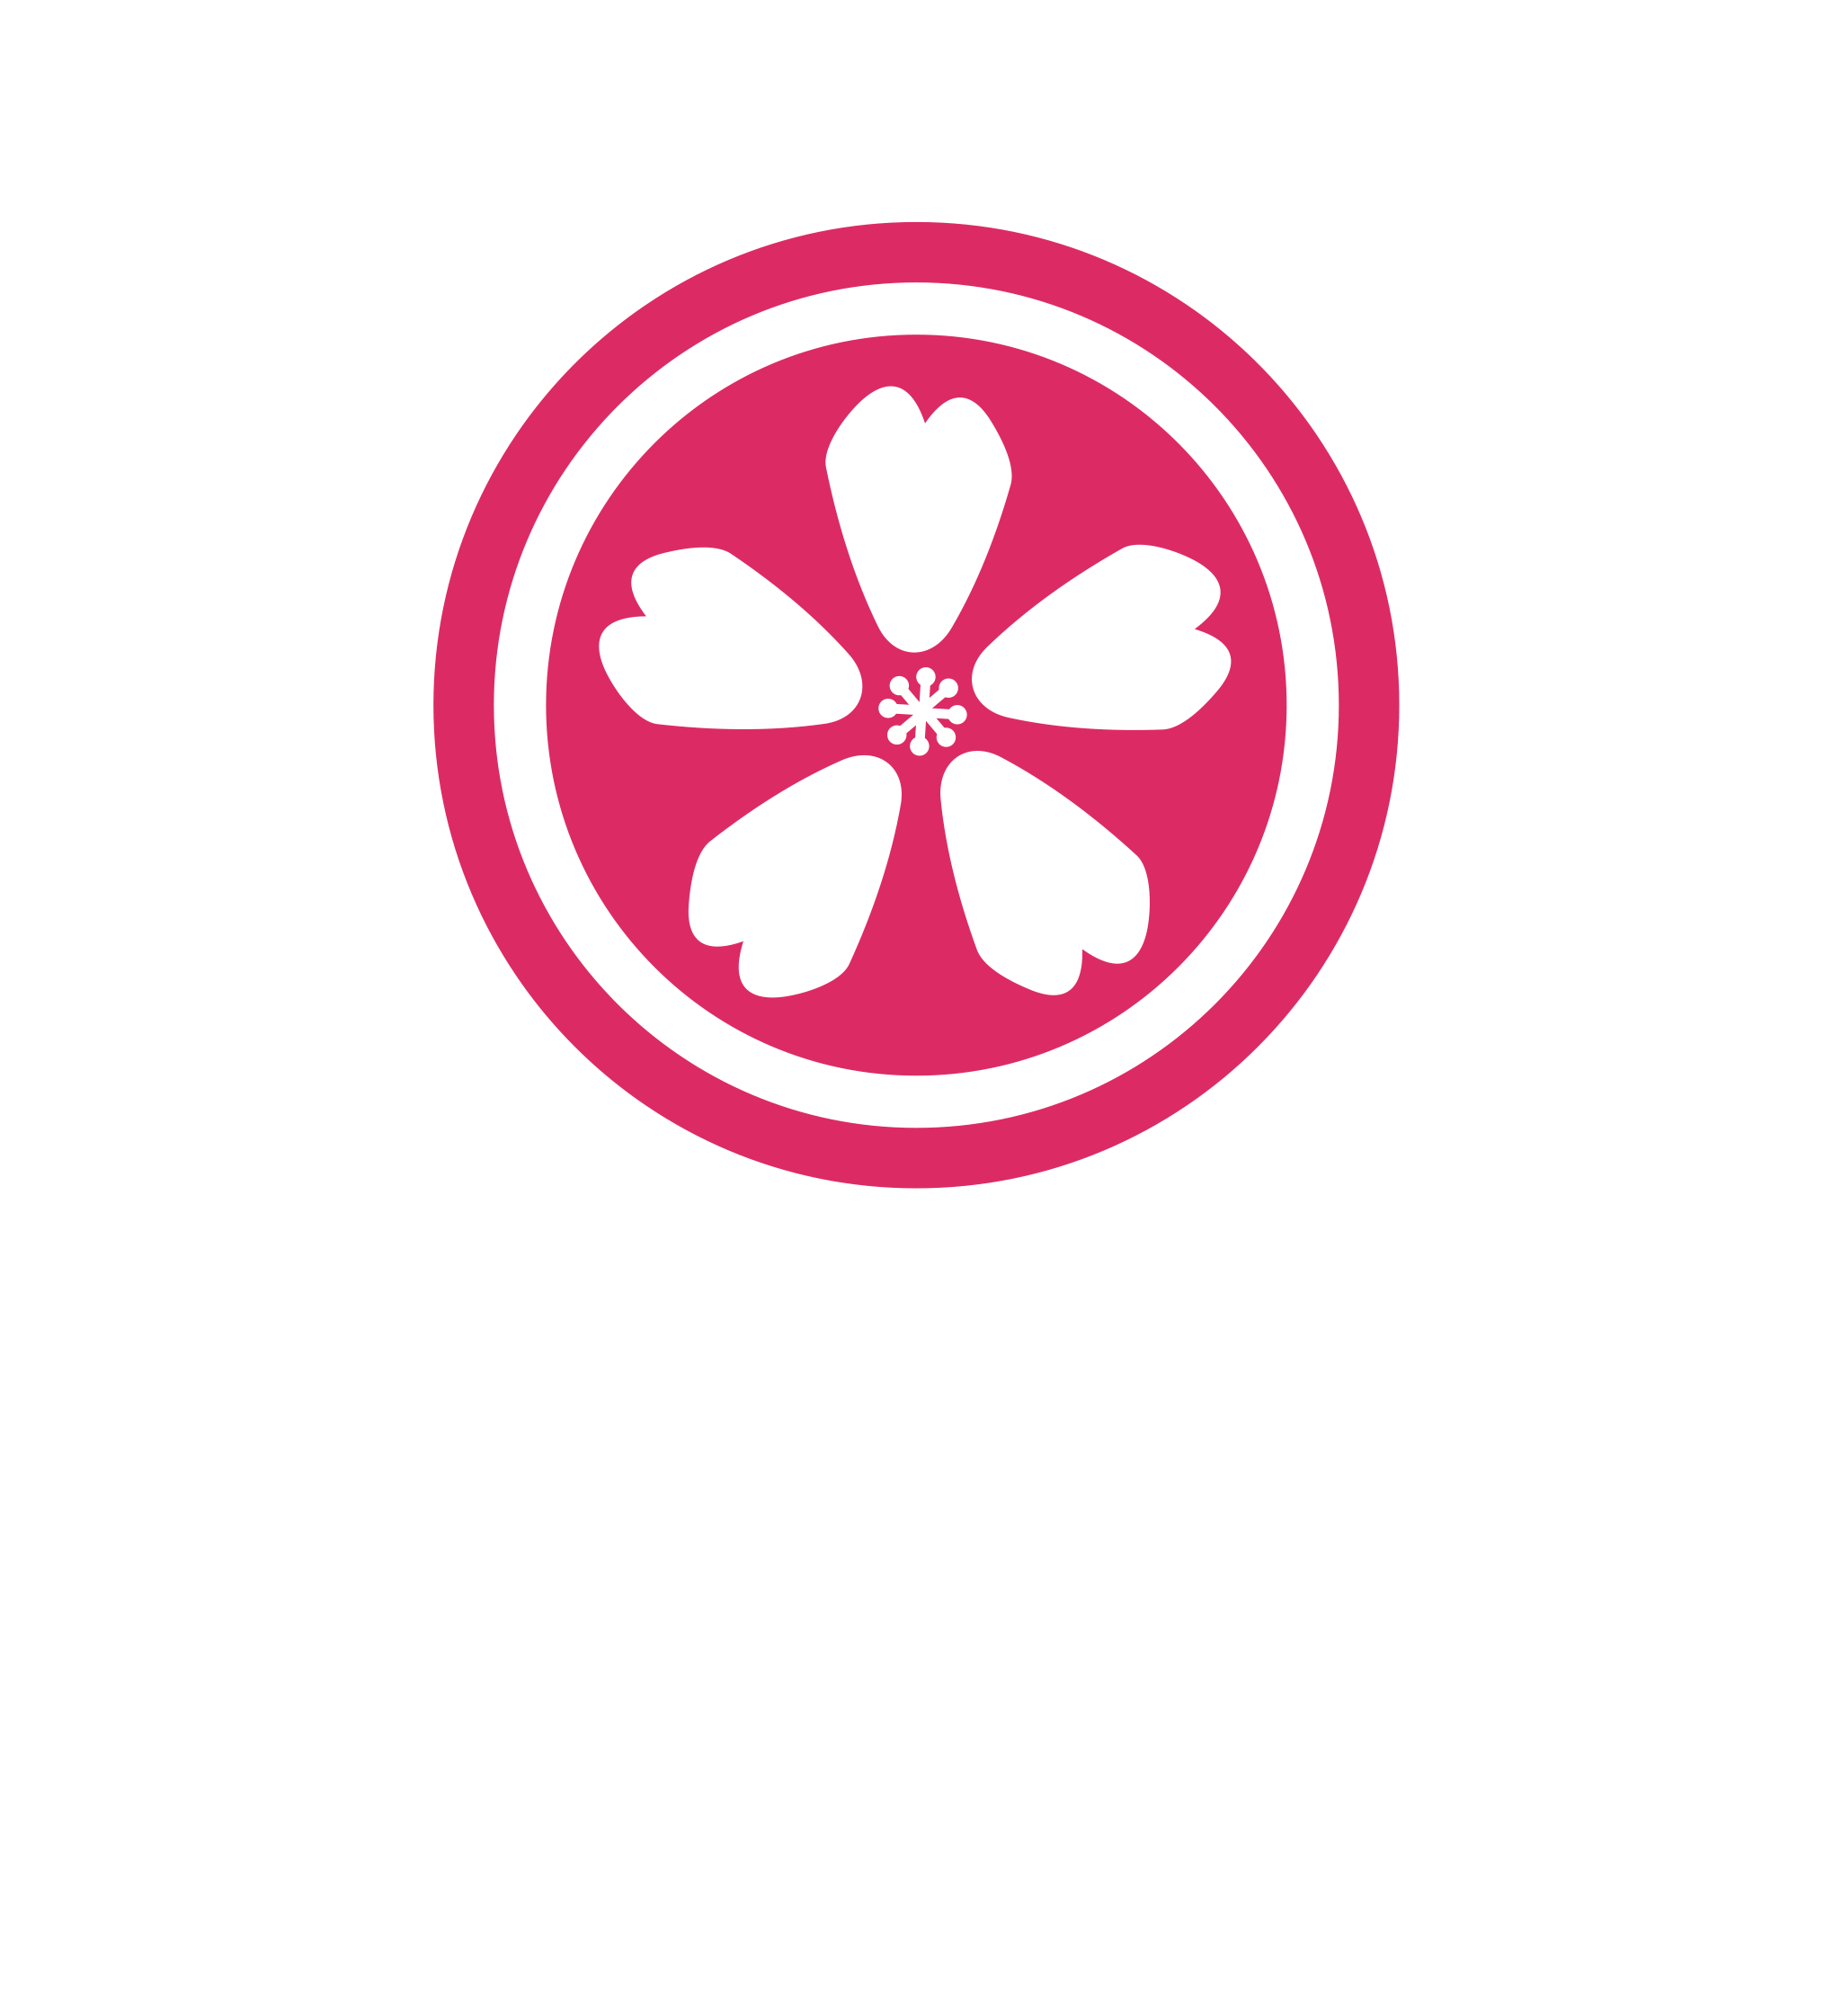 Sakura Matsuri - Japanese Street Festival